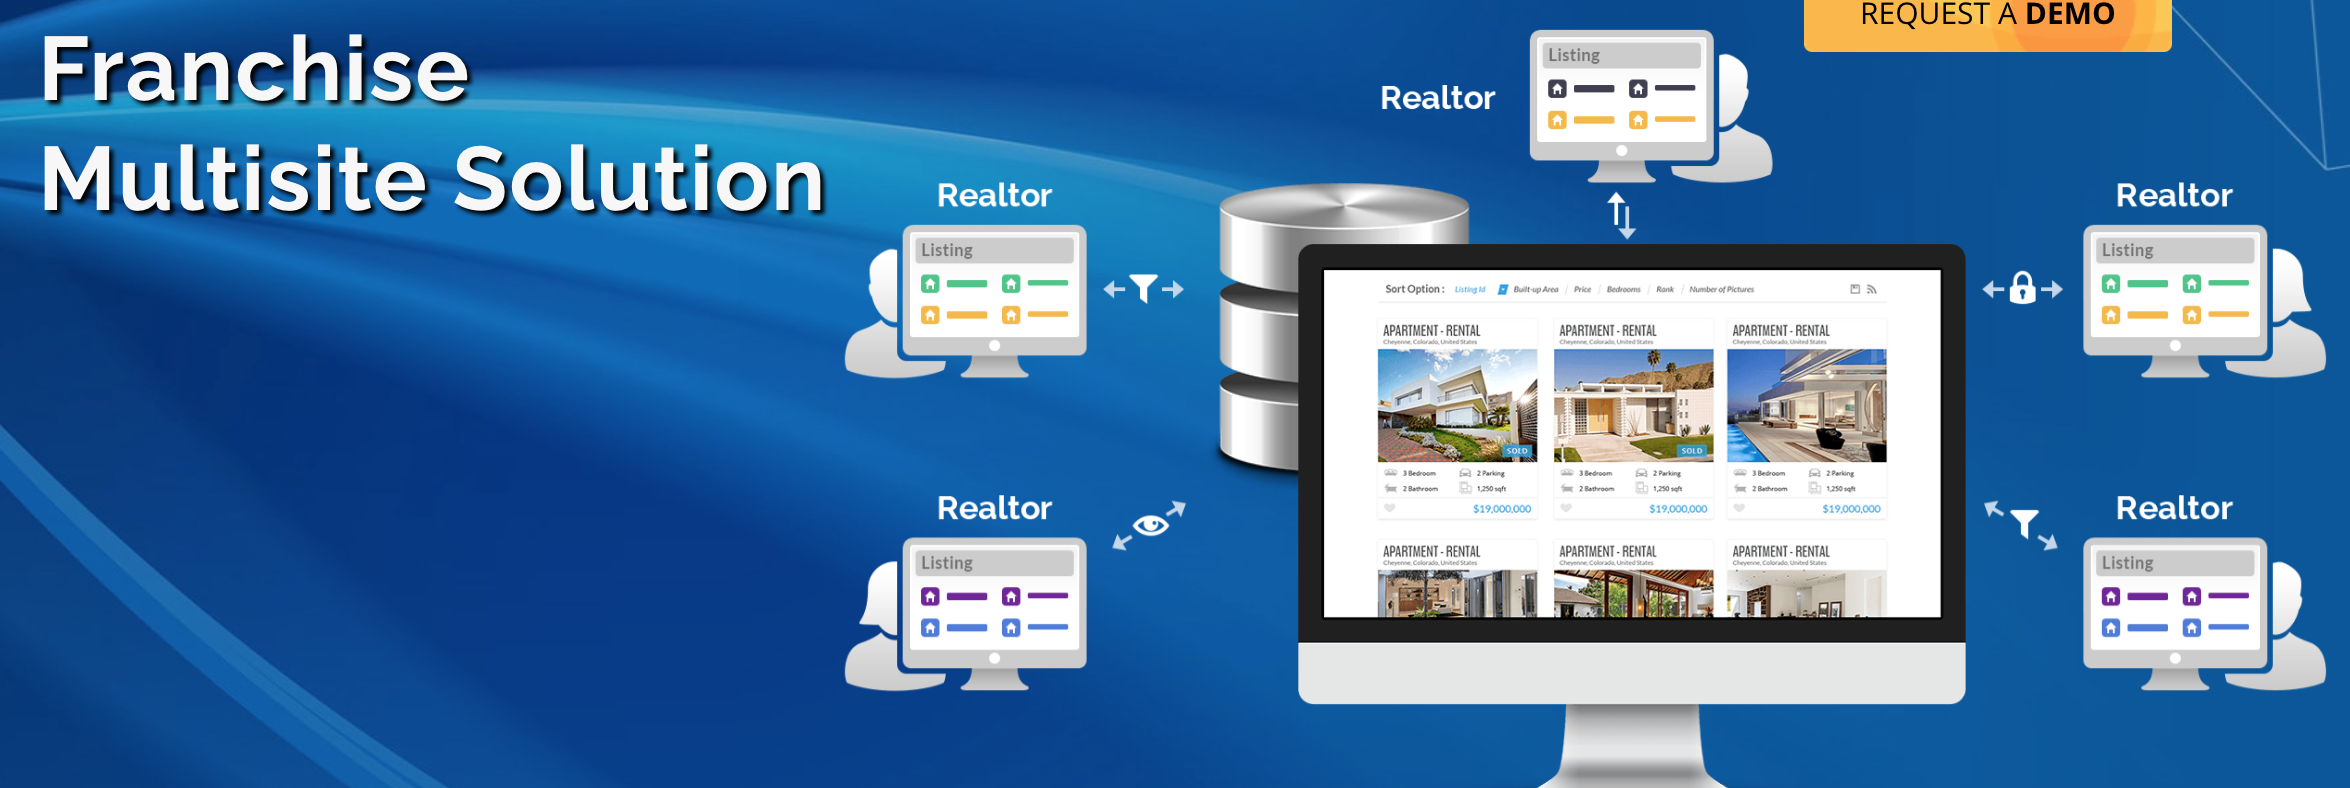 franchise solutions for real estate website